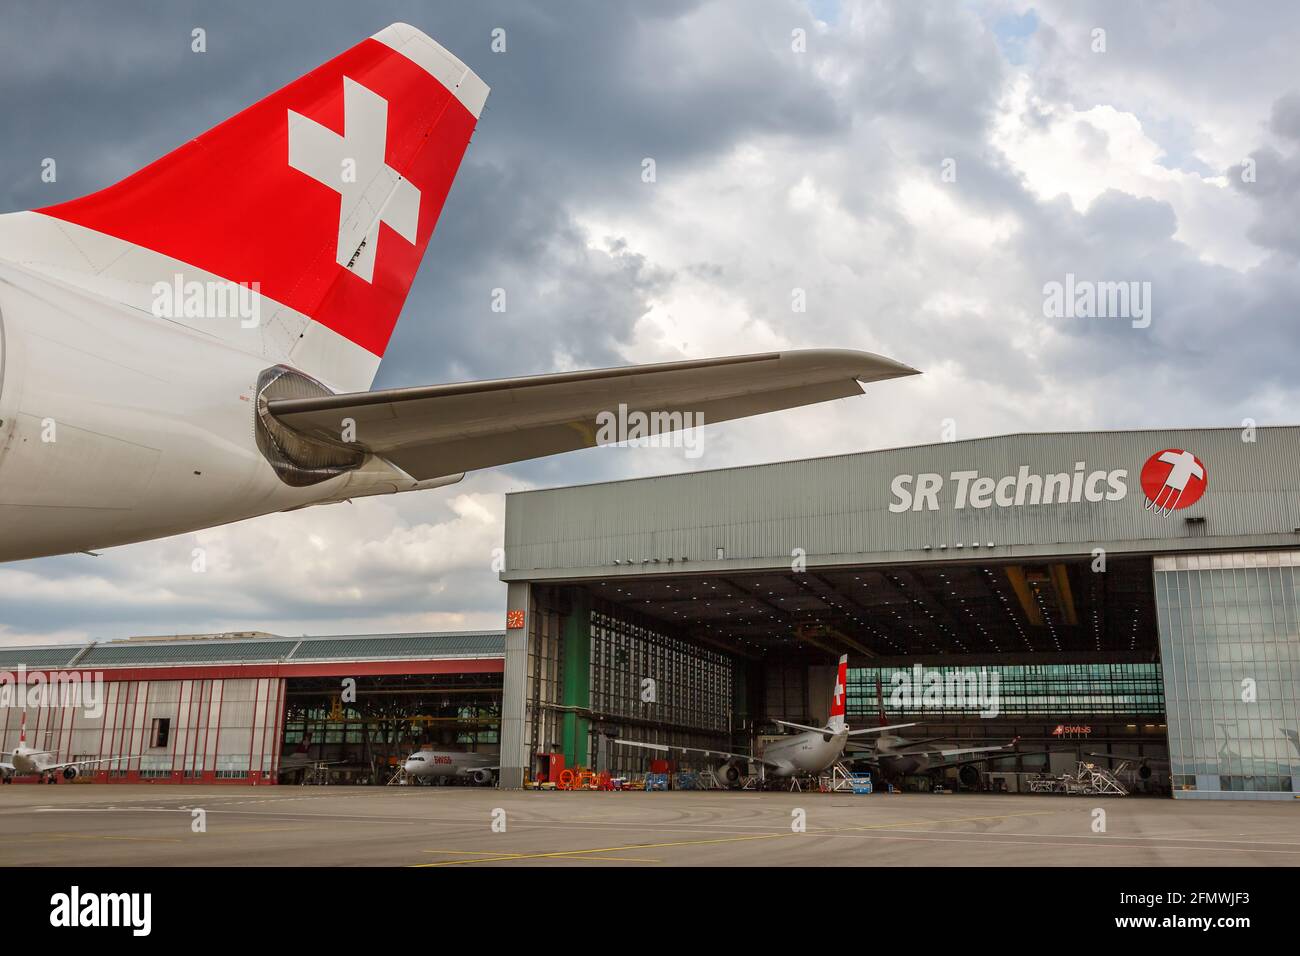 Zurigo, Svizzera - 22 luglio 2020: Velivolo svizzero per aerei Tail e SR Technics all'aeroporto di Zurigo (ZRH) in Svizzera. Foto Stock